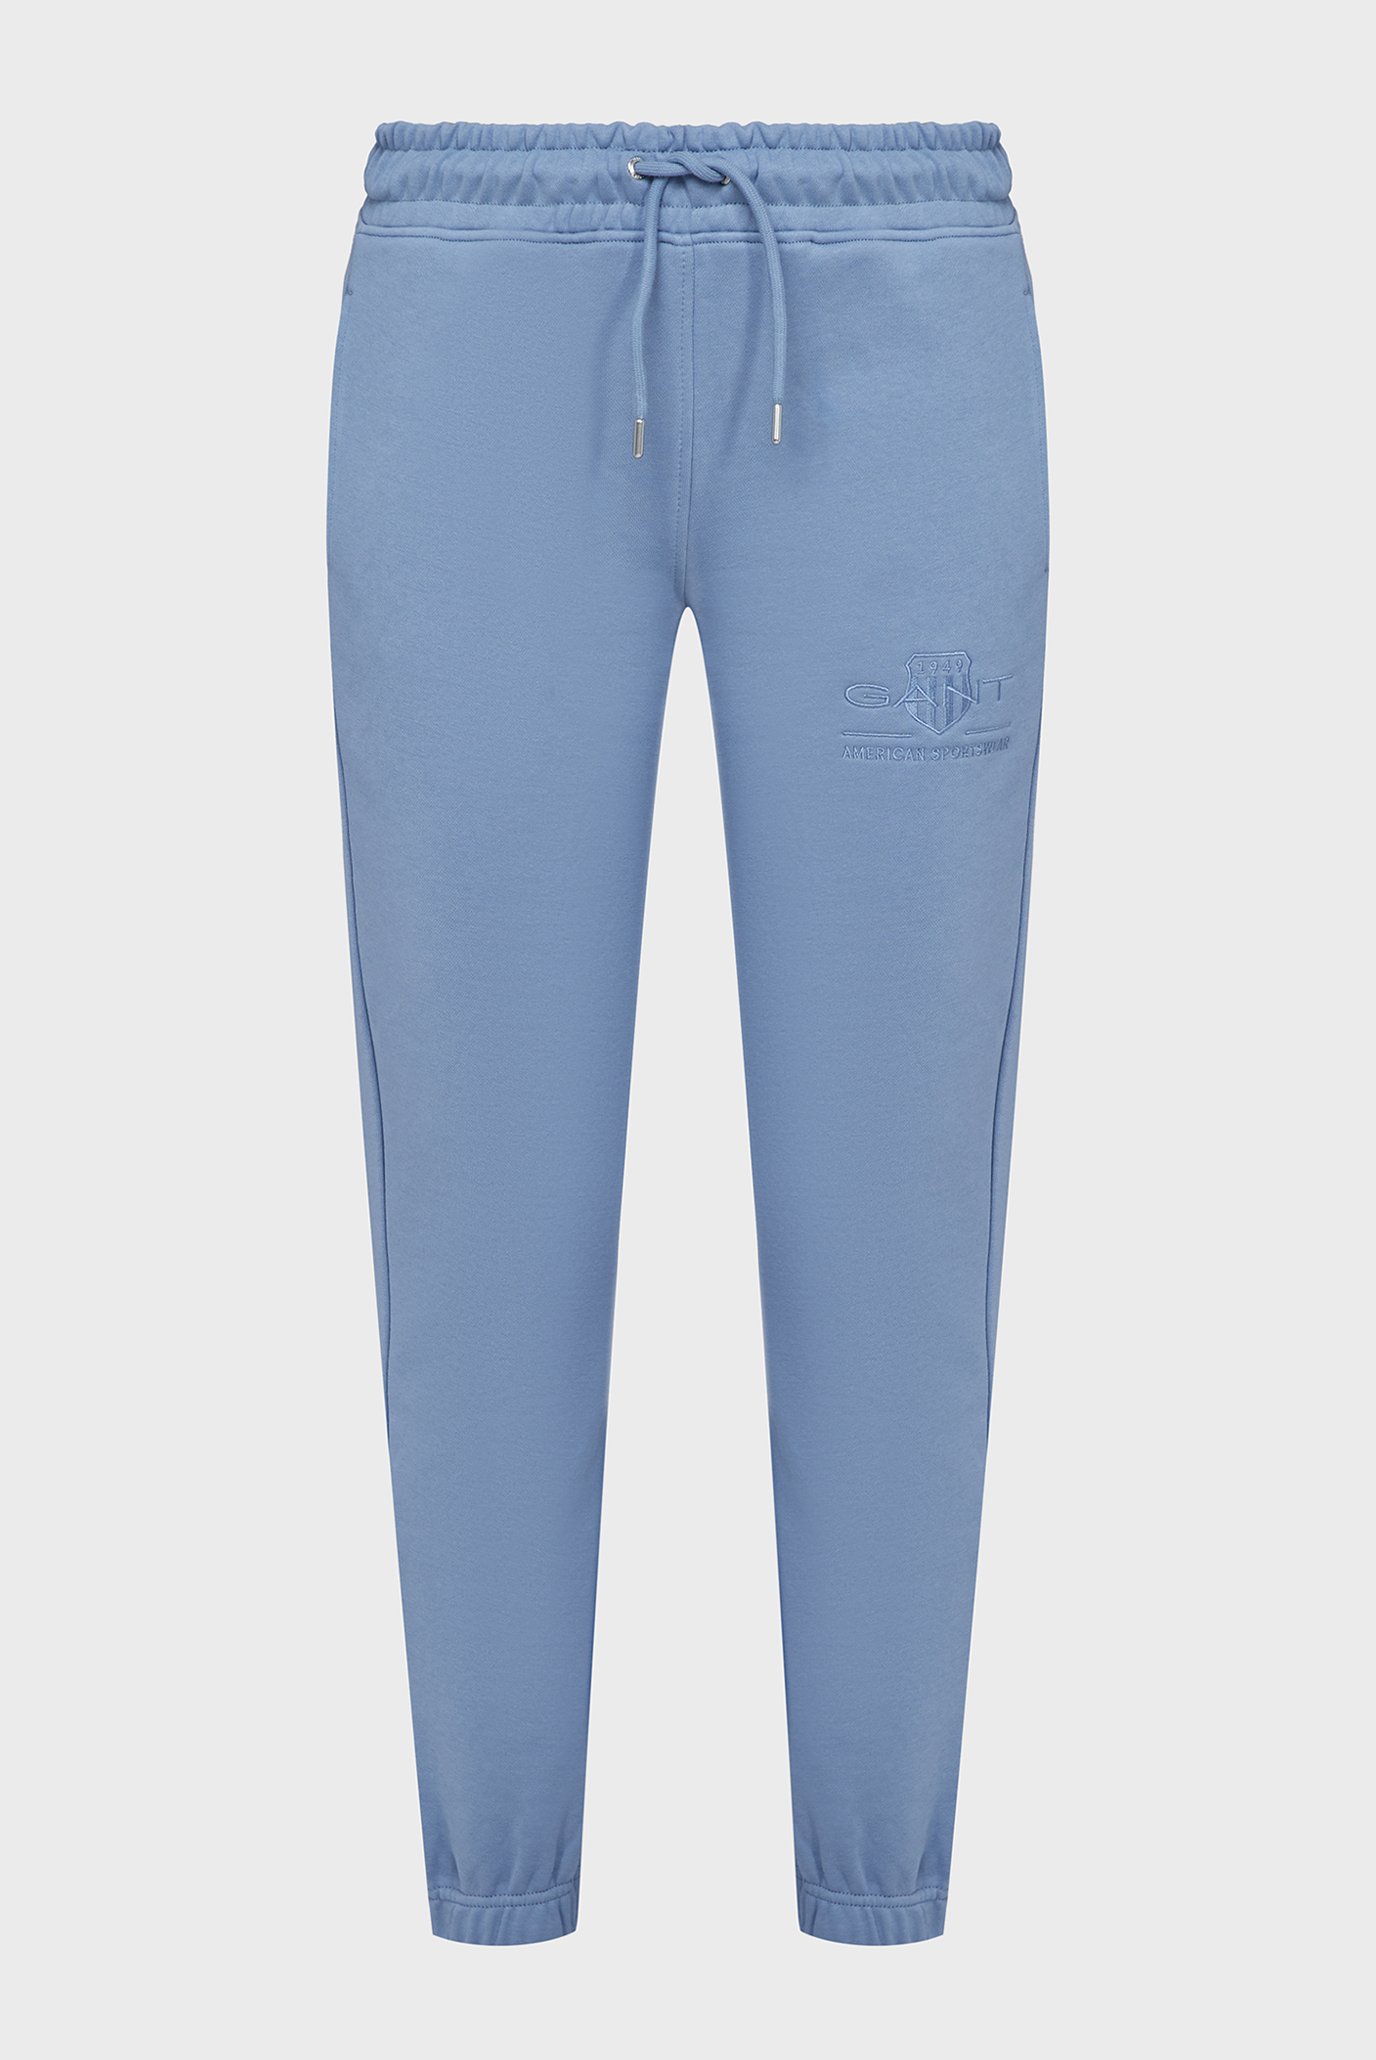 Жіночі блакитні спортивні штани REG TONAL SHIELD SWEATPANTS 1